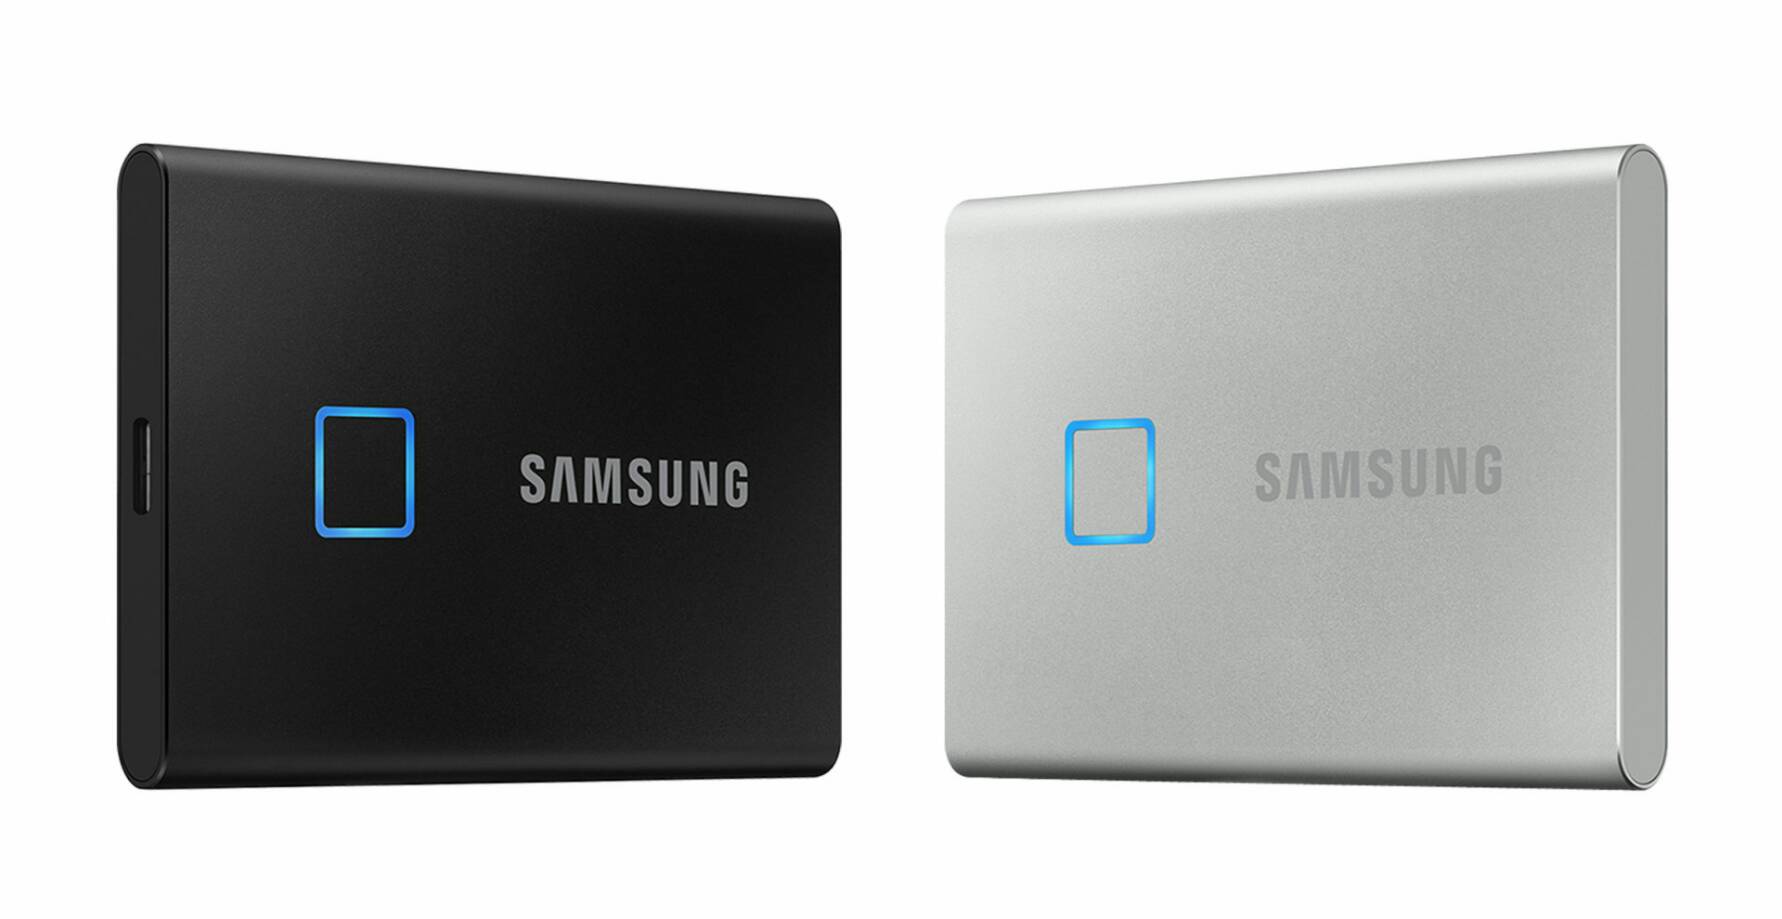 โครตล้ำ! “Samsung เปิดตัว T7 Touch SSD พกพารุ่นใหม่ ไฉไลด้วยการปกป้องข้อมูลด้วยลายนิ้วมือ gadgetมาใหม่ อัพเดทเทคโนโลยี ข่าวไอที อัพเดทโลกไซเบอร์